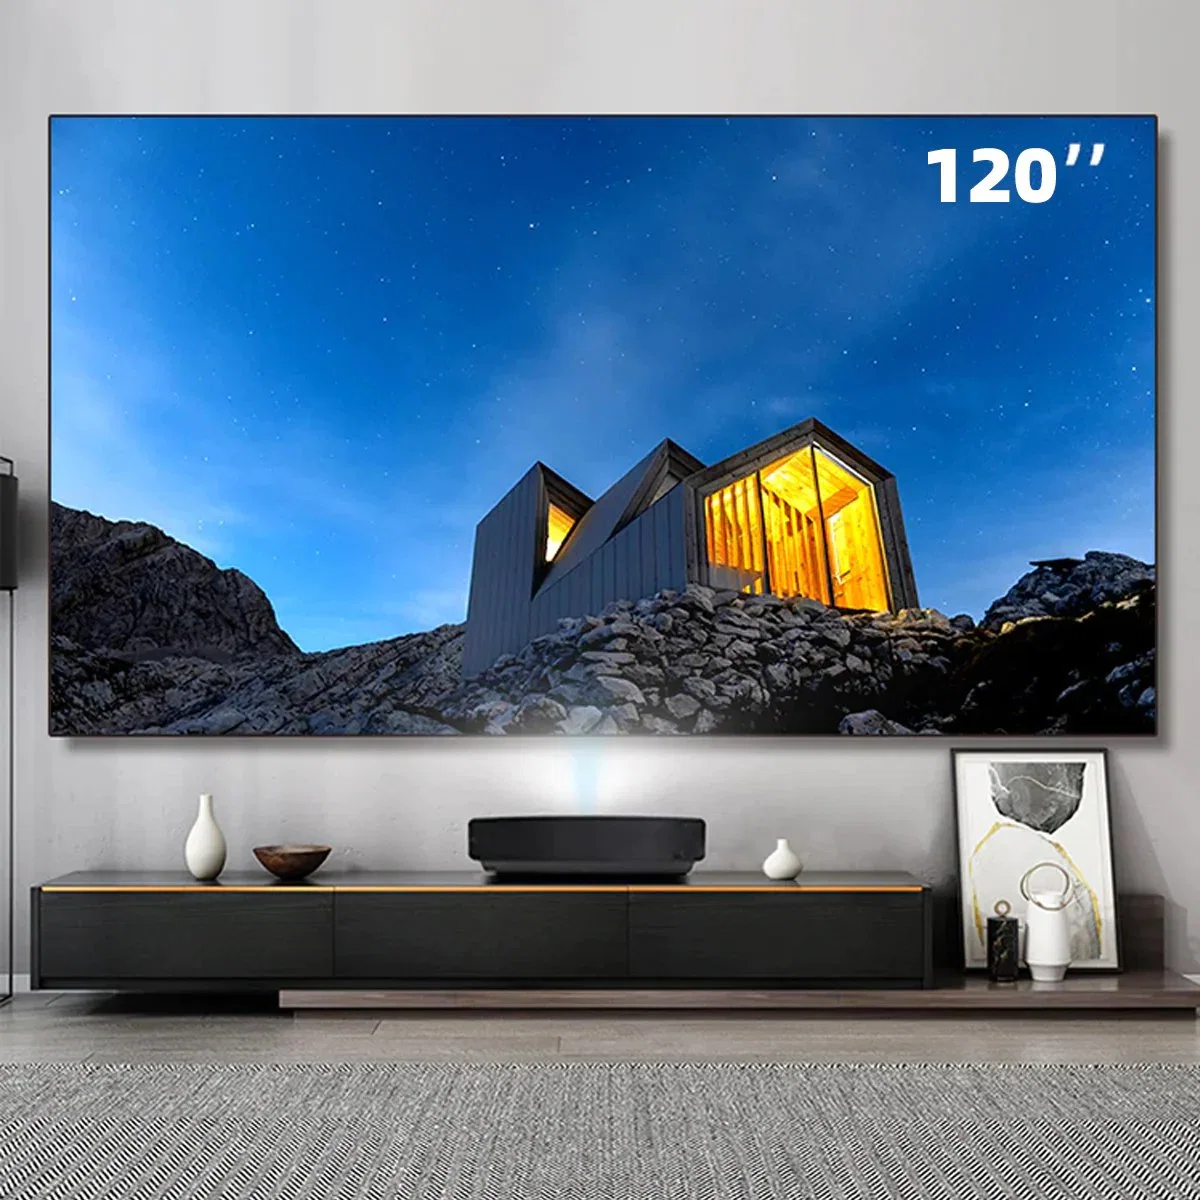 شاشة تلفاز تعمل بالليزر Fresnel شاشة عرض ذات آلية سحب القفل الأوتوماتيكي (ALR) مقاس 120 بوصة ذات إسقاط قصير جدًا شاشة عرض ذات إطار ثابت يبلغ 8 آلاف صفحة وشاشة عرض للمسرح المنزلي/لعبة الفيديو.